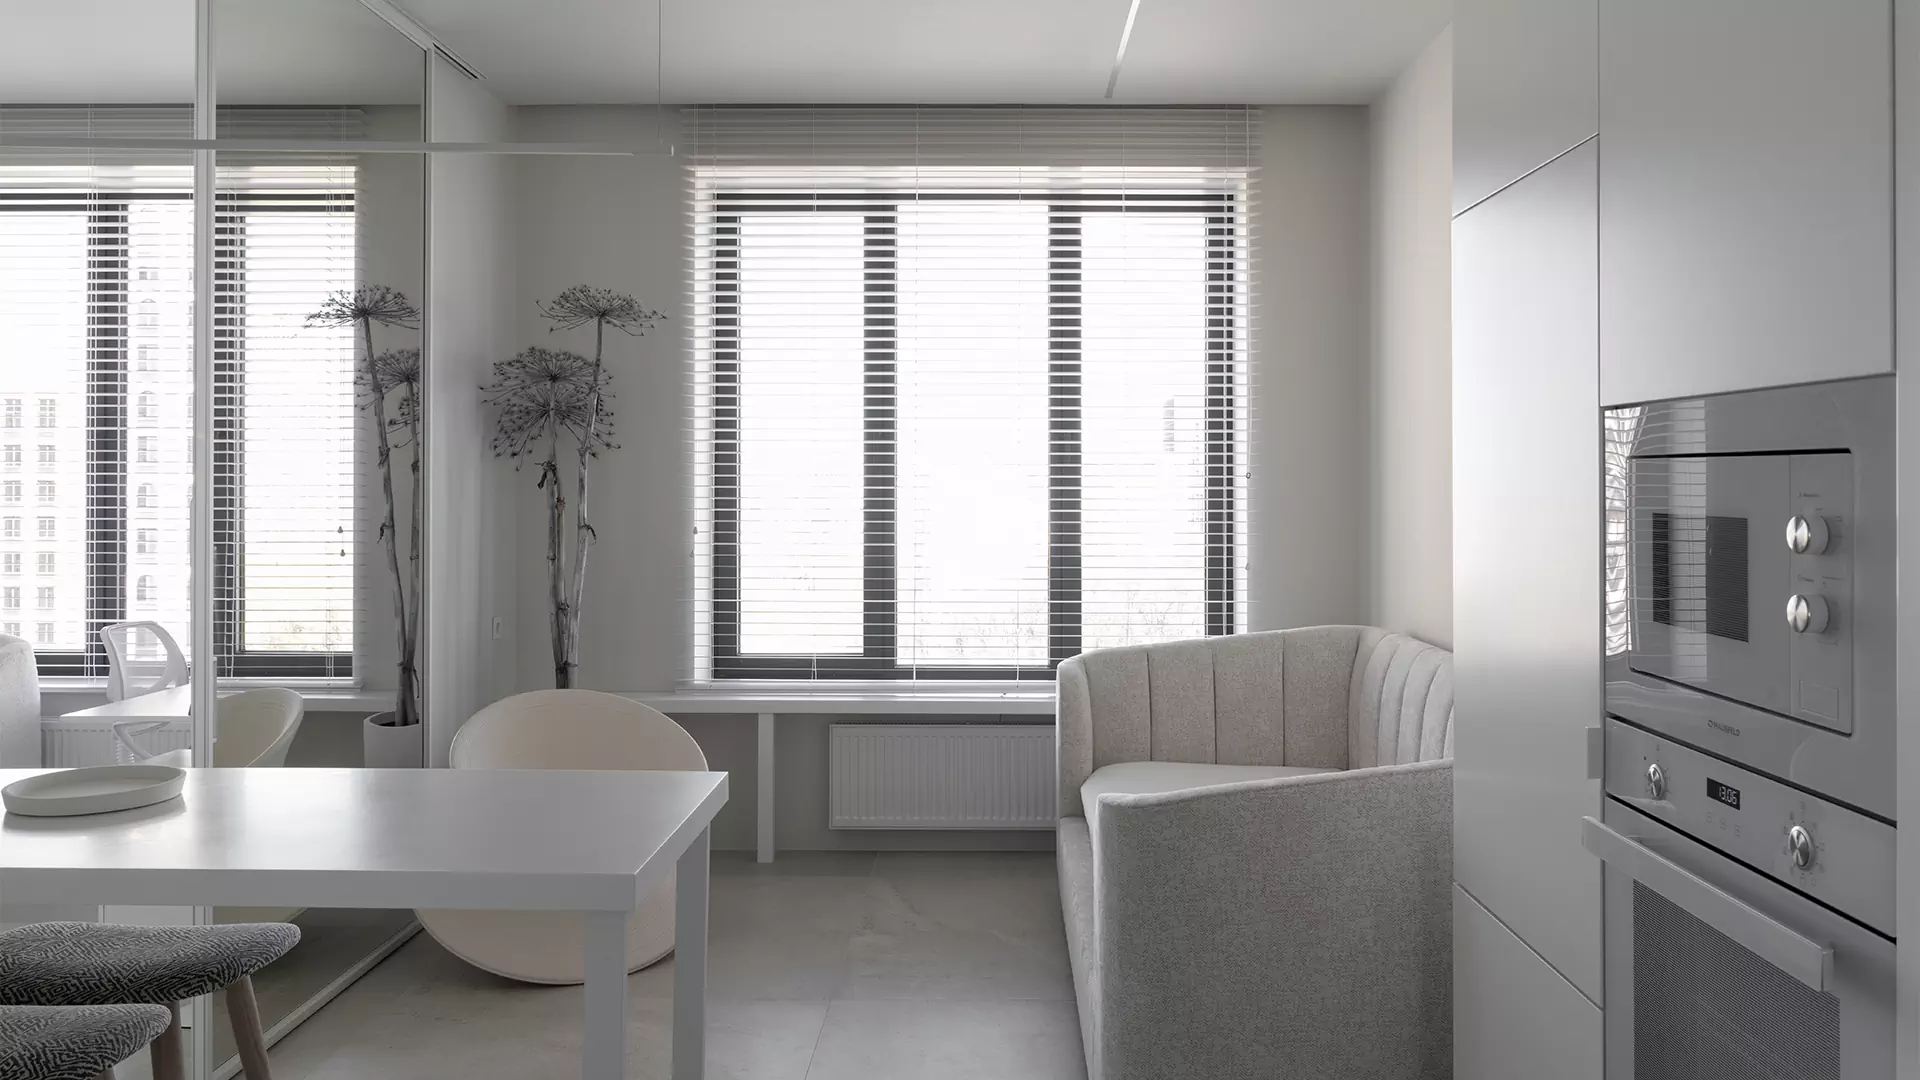 Располагающий к отдыху интерьер небольших апартаментов для дизайнера — проект Юлии Сорокиной